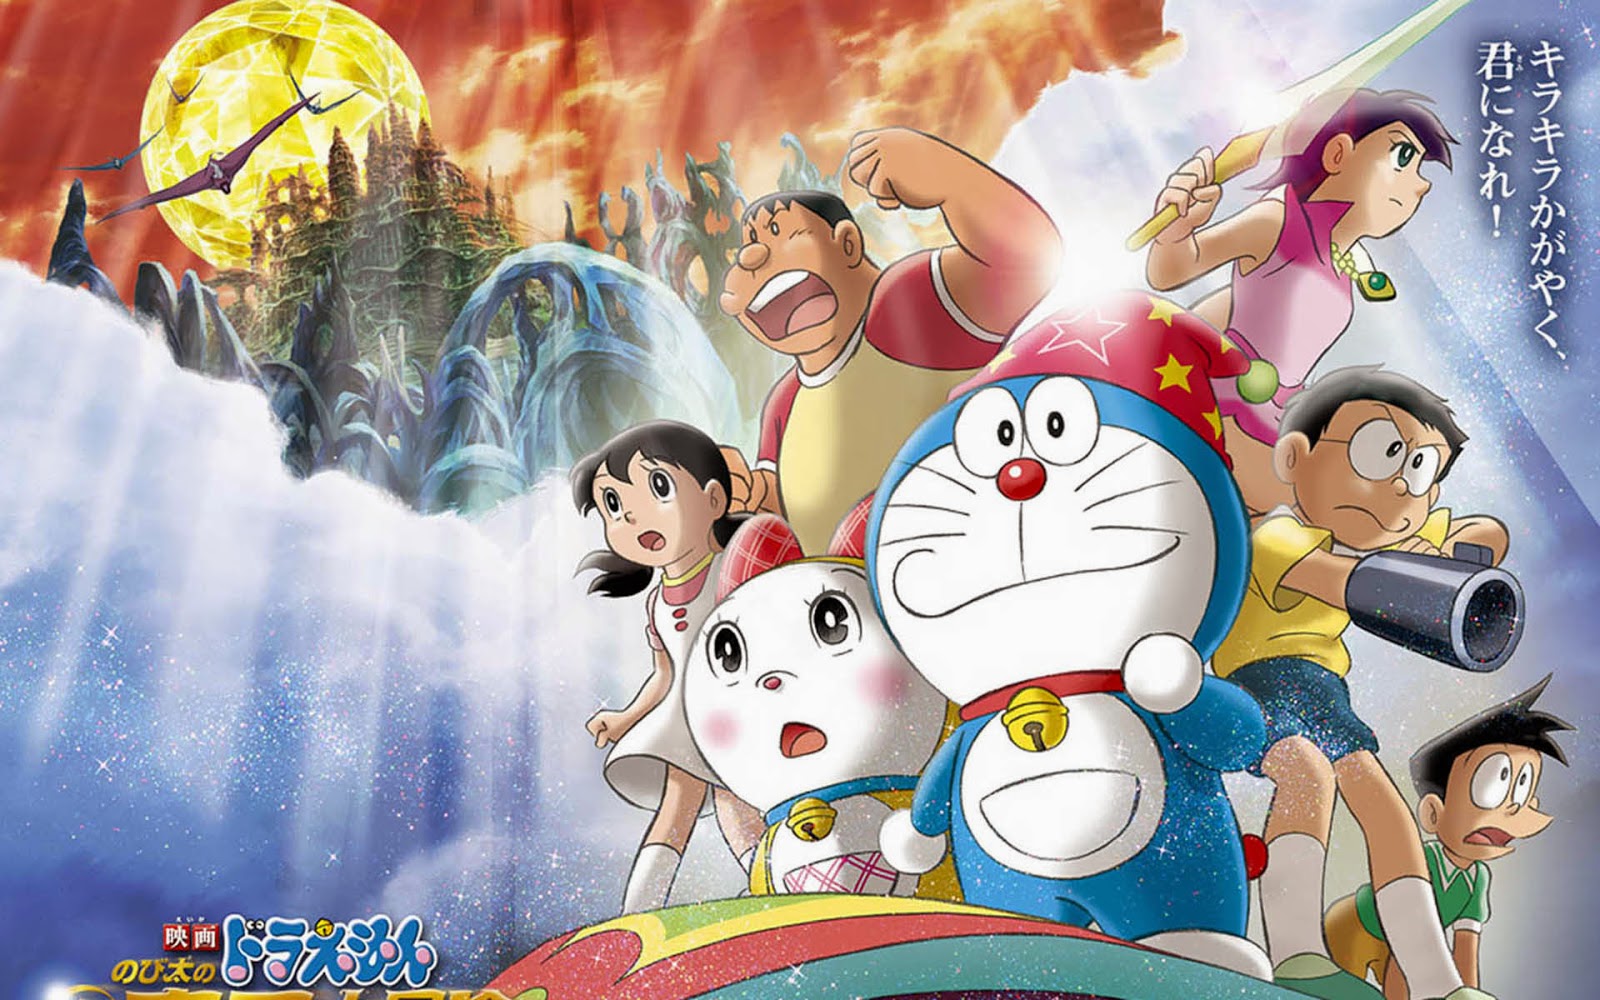 Komik Doraemon  Episode Terakhir Takut Menangis Jangan 